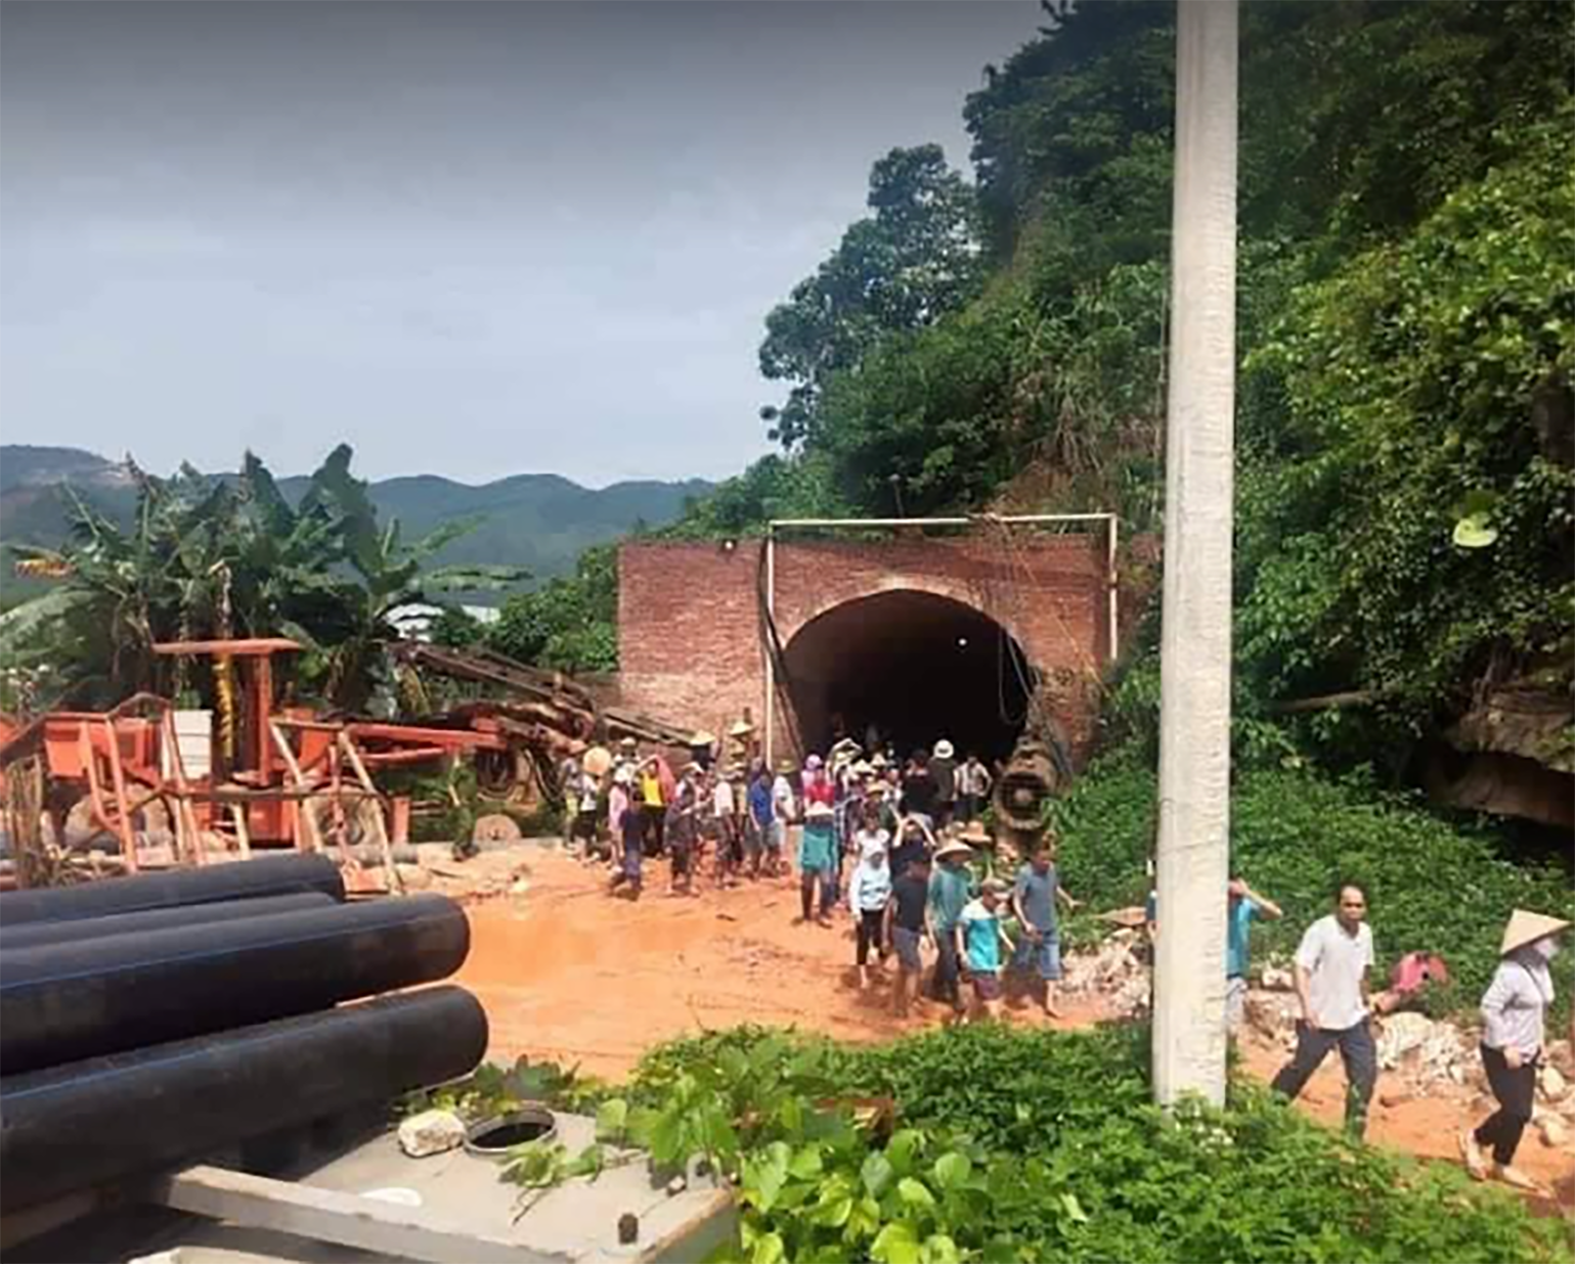  Người dân xã Châu Hồng, huyện Quỳ Hợp kéo đến hầm mỏ của Công ty CP Tân Hoàng Khang đang khai thác quặng thiếc vì nghi ngờ gây ra những hiện tượng sụt lút bất thường trên địa bàn vào thời điểm cuối tháng 5/2022.